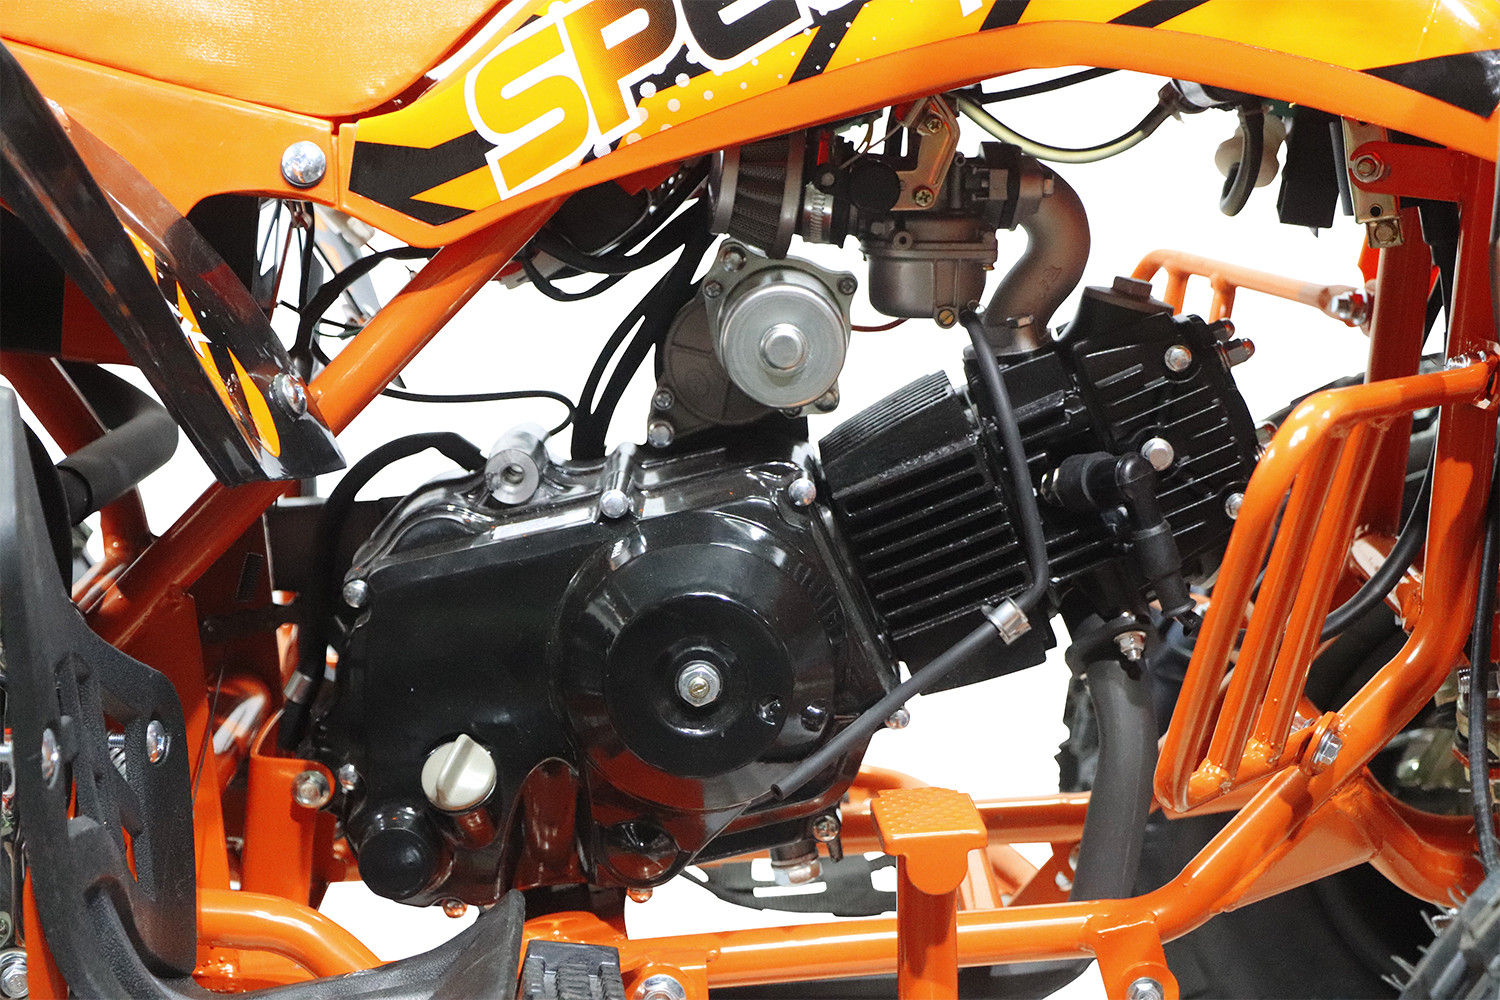 Speedy 125cc Spalinowy Quad 8